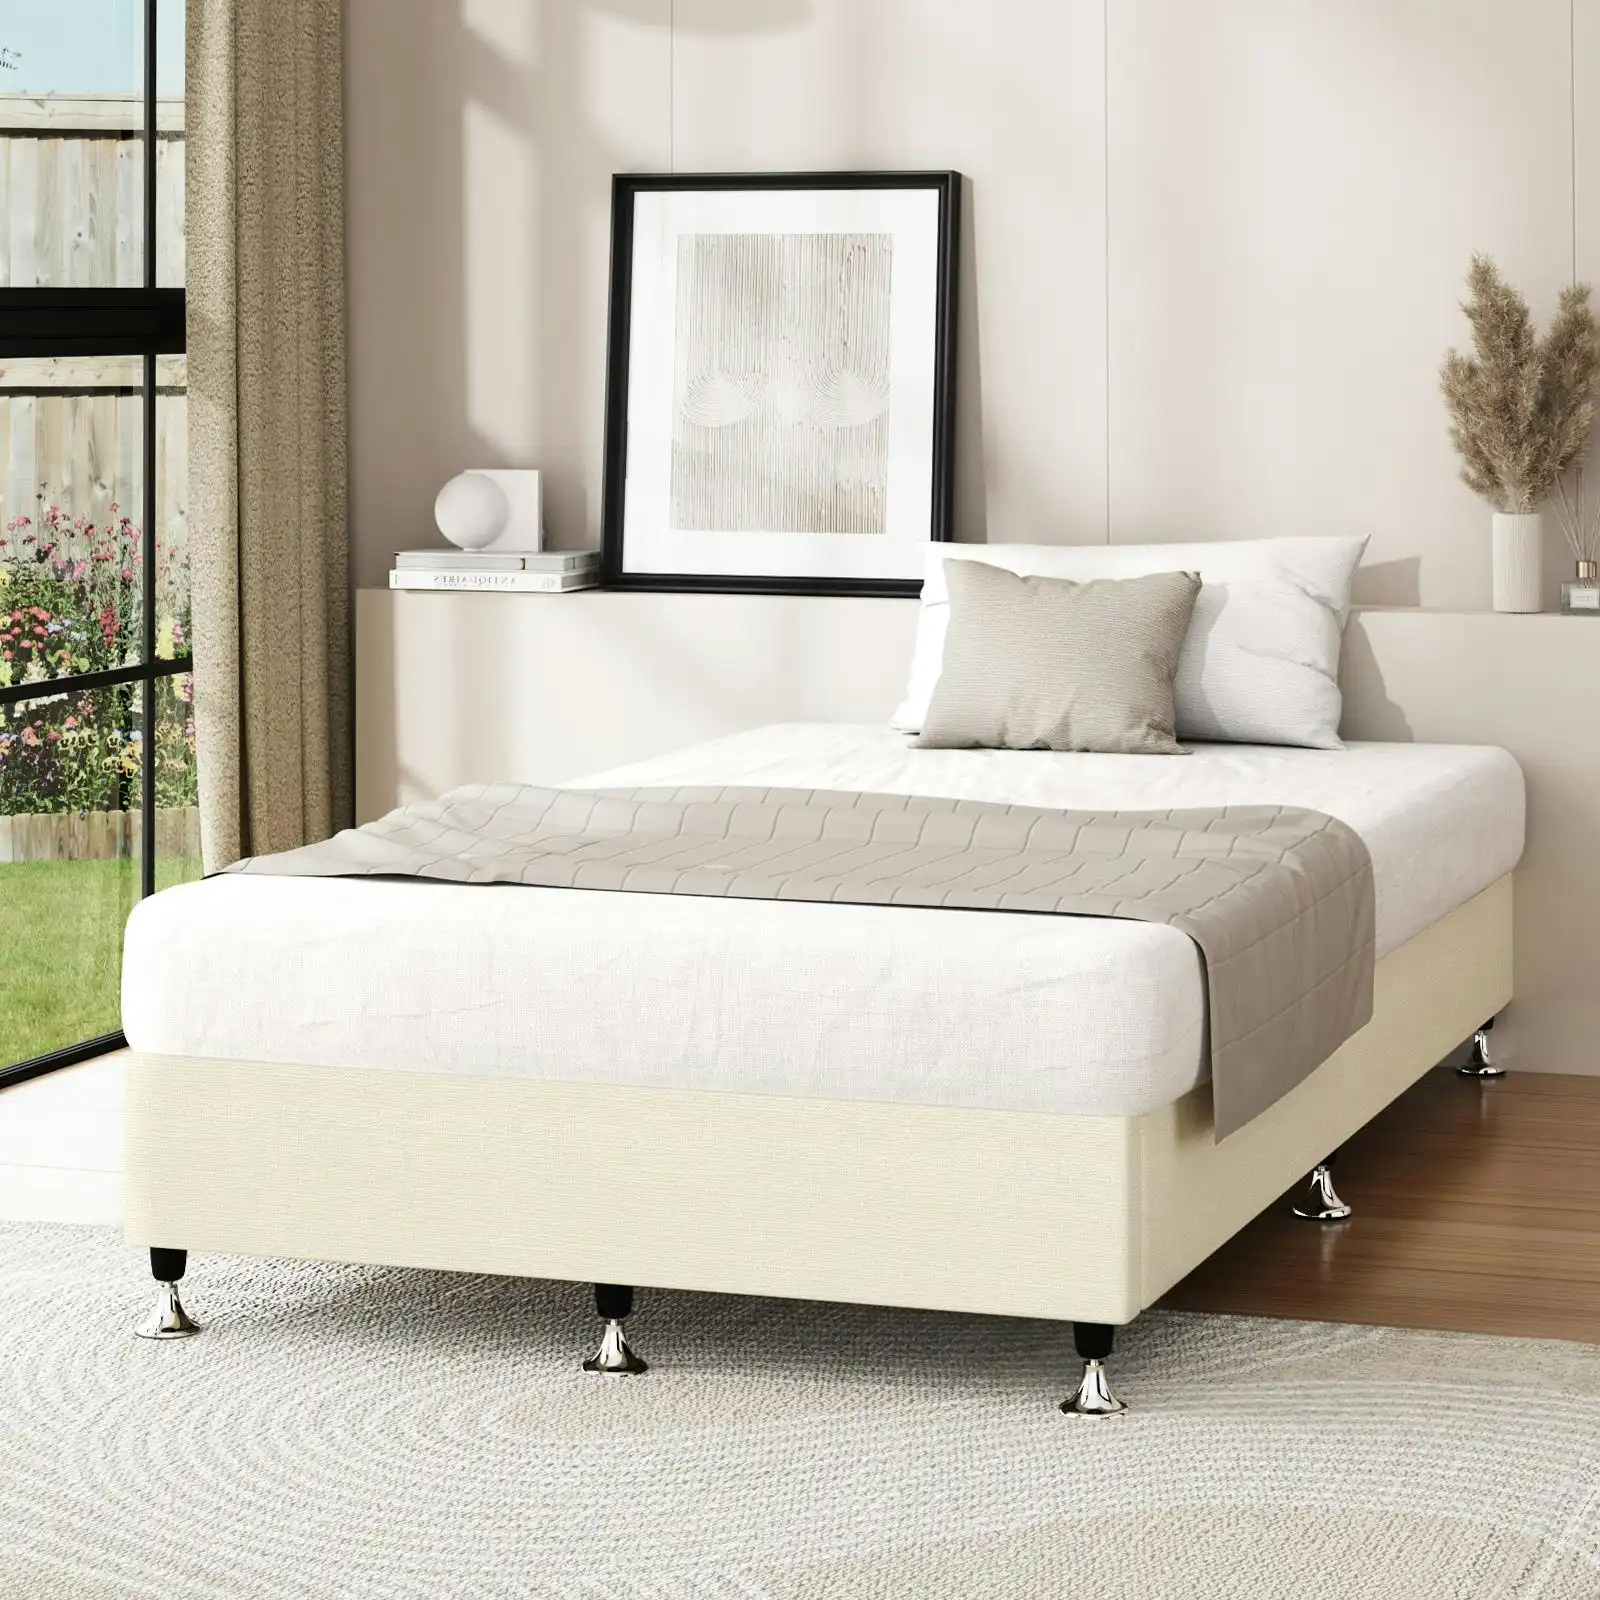 Oikiture Bed Frame Single Size Bed Base Platform Beige